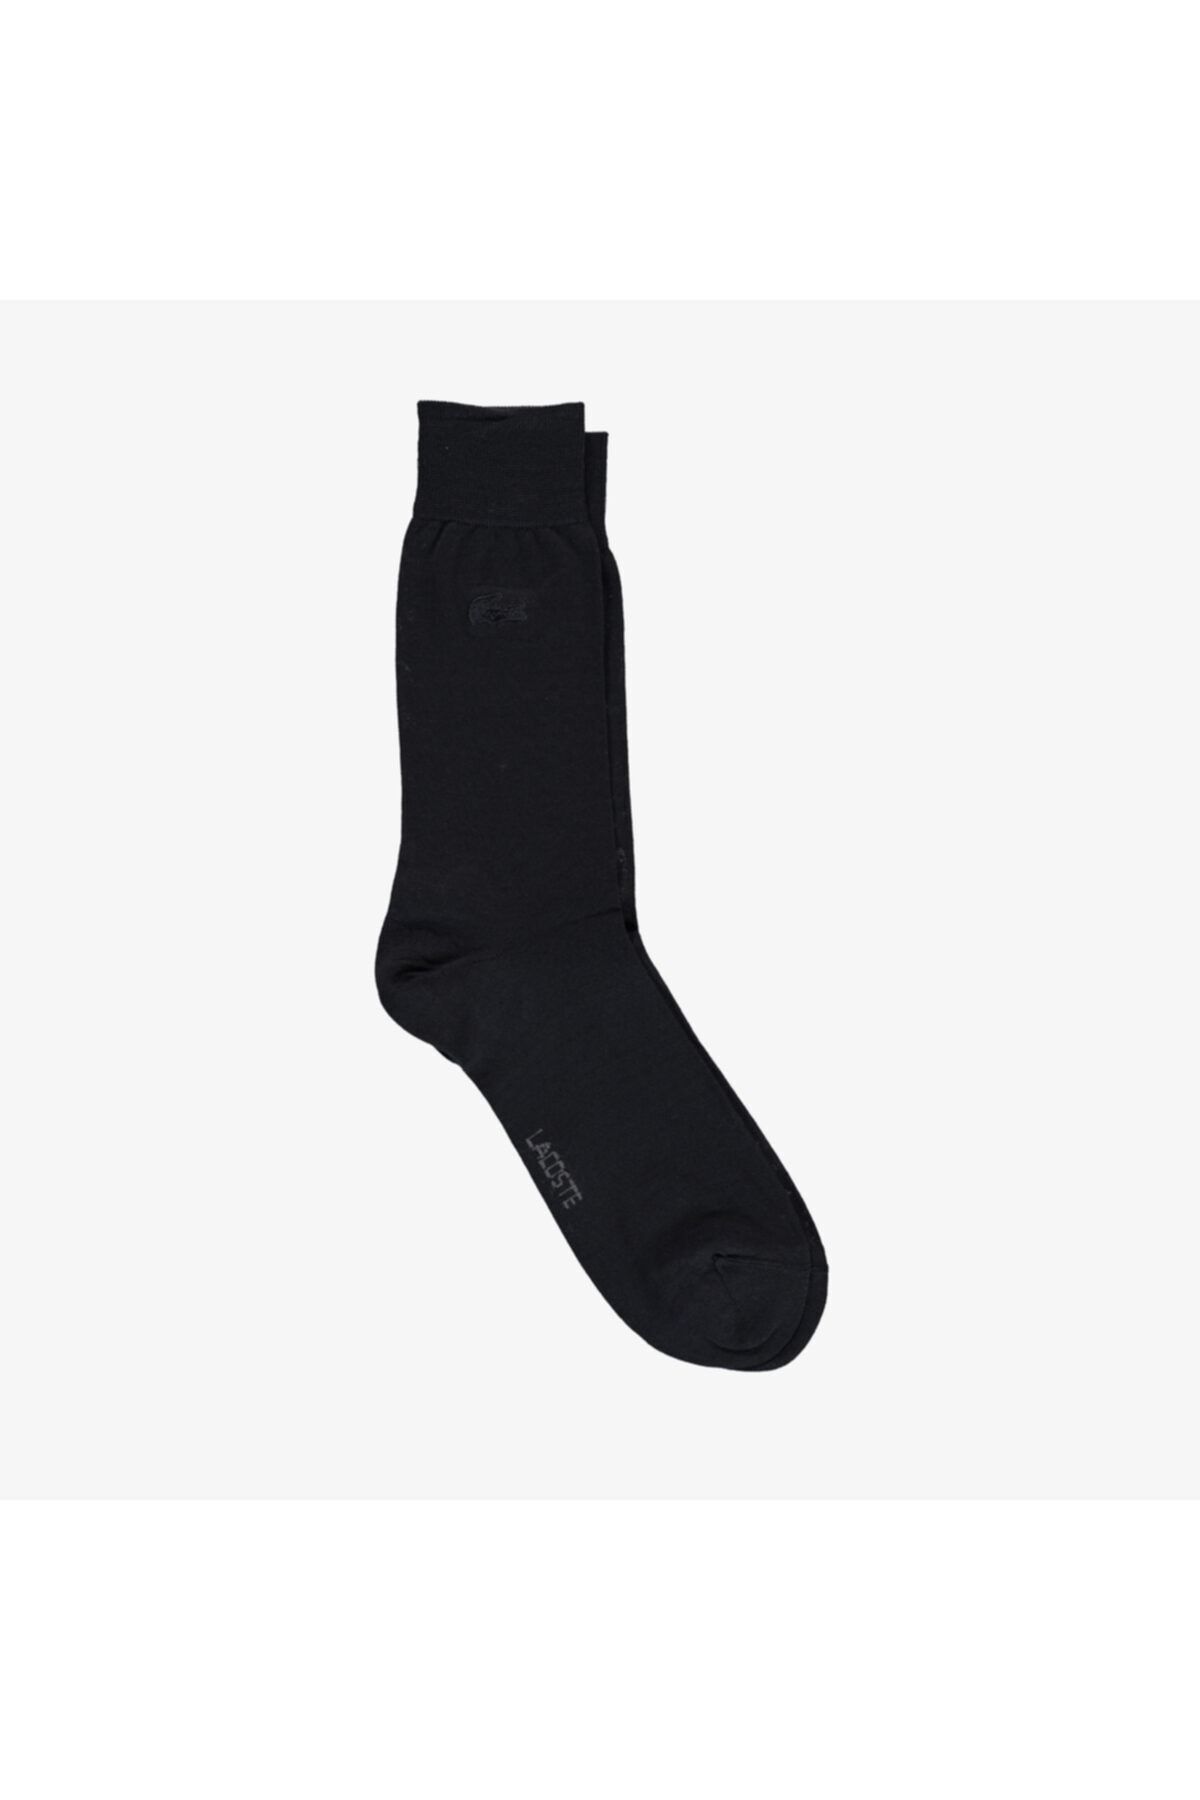 Lacoste Erkek Uzun Lacivert Çorap RA6707